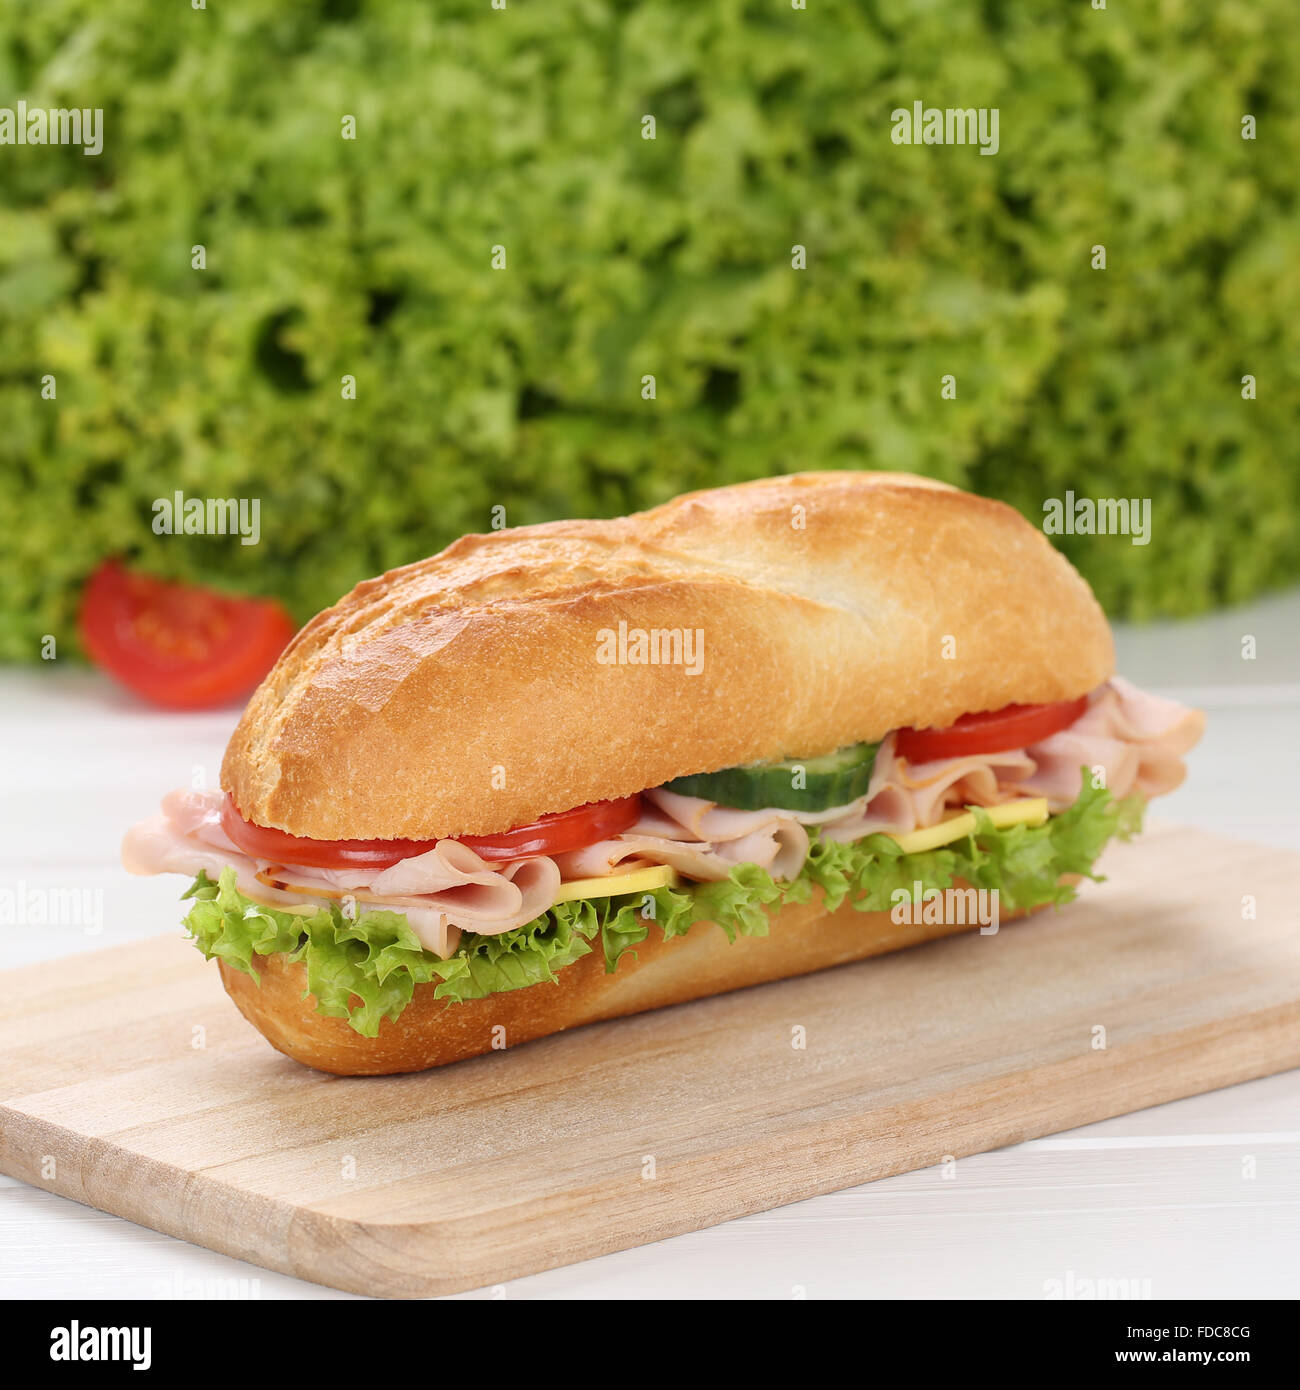 Mangiare sano sub deli sandwich baguette con prosciutto e formaggio, pomodori e lattuga Foto Stock